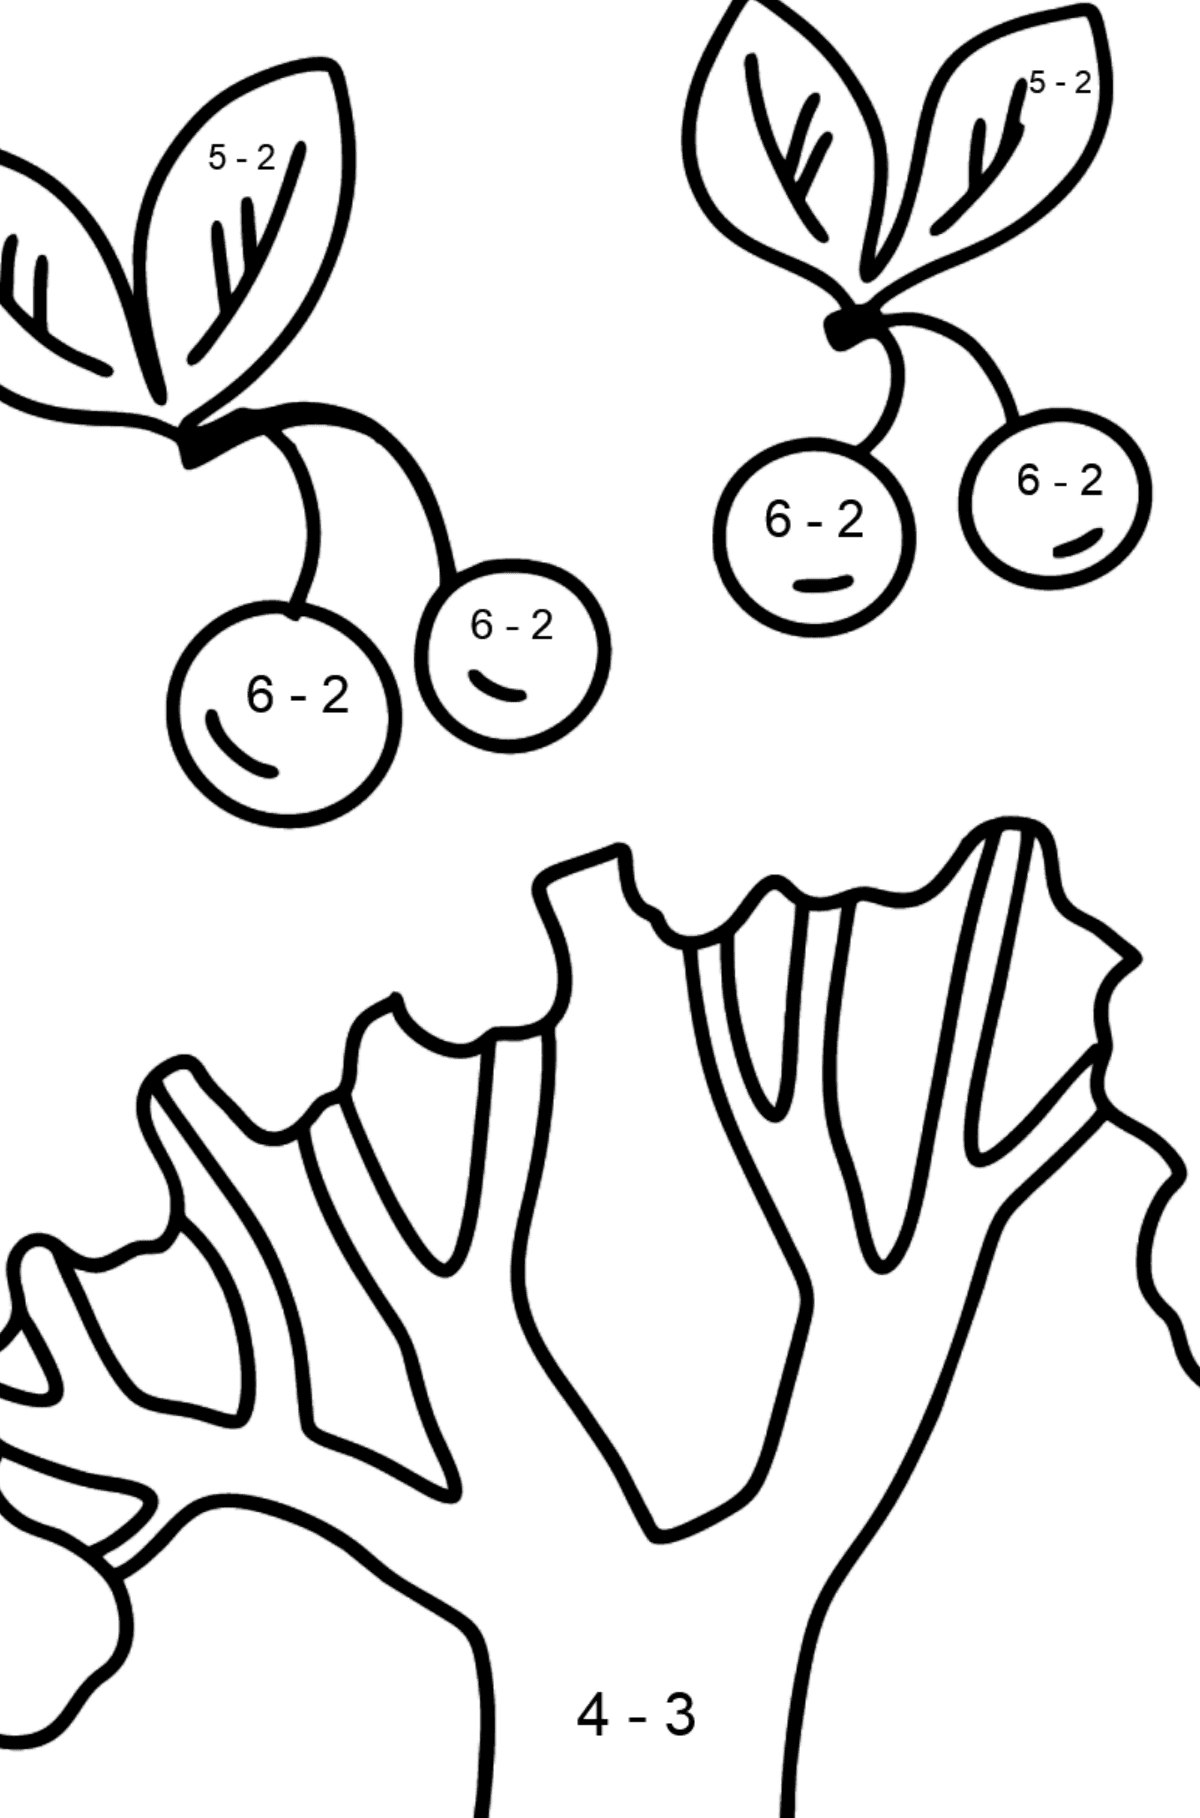 Mewarnai gambar pohon ceri - Pewarnaan Matematika: Pengurangan untuk anak-anak